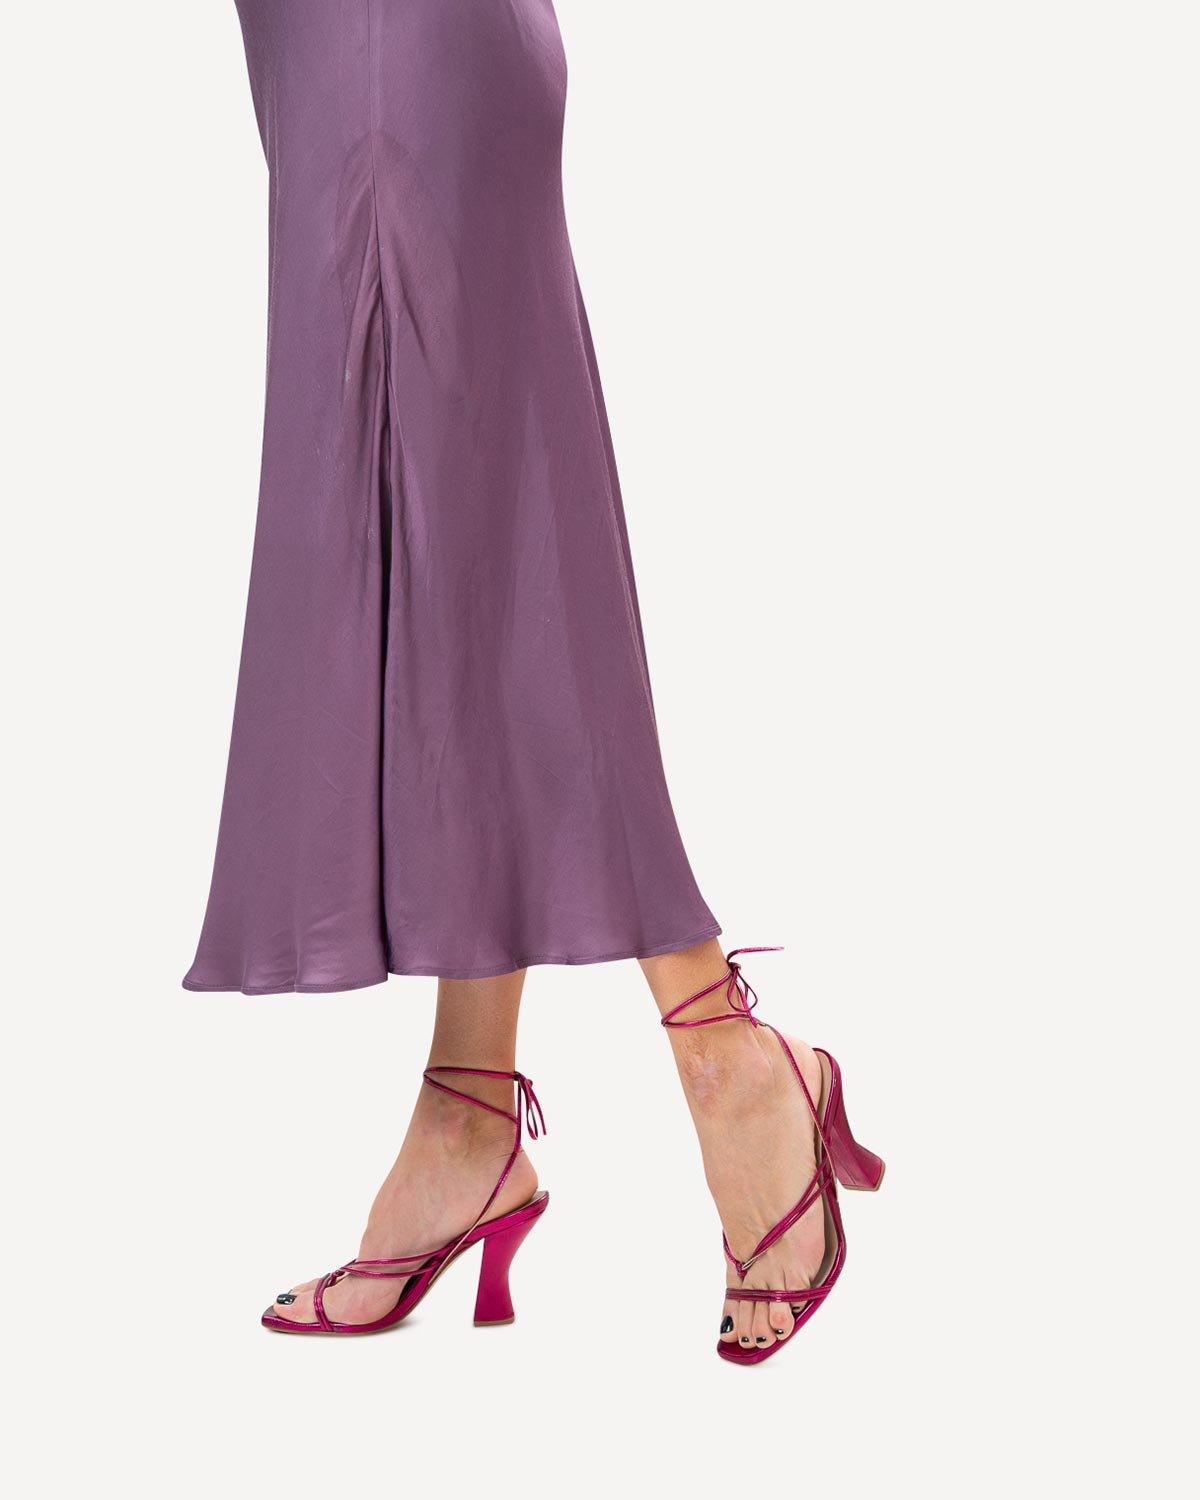 Γυναίκα - High Heels Πέδιλα - Classico Donna Φούξια